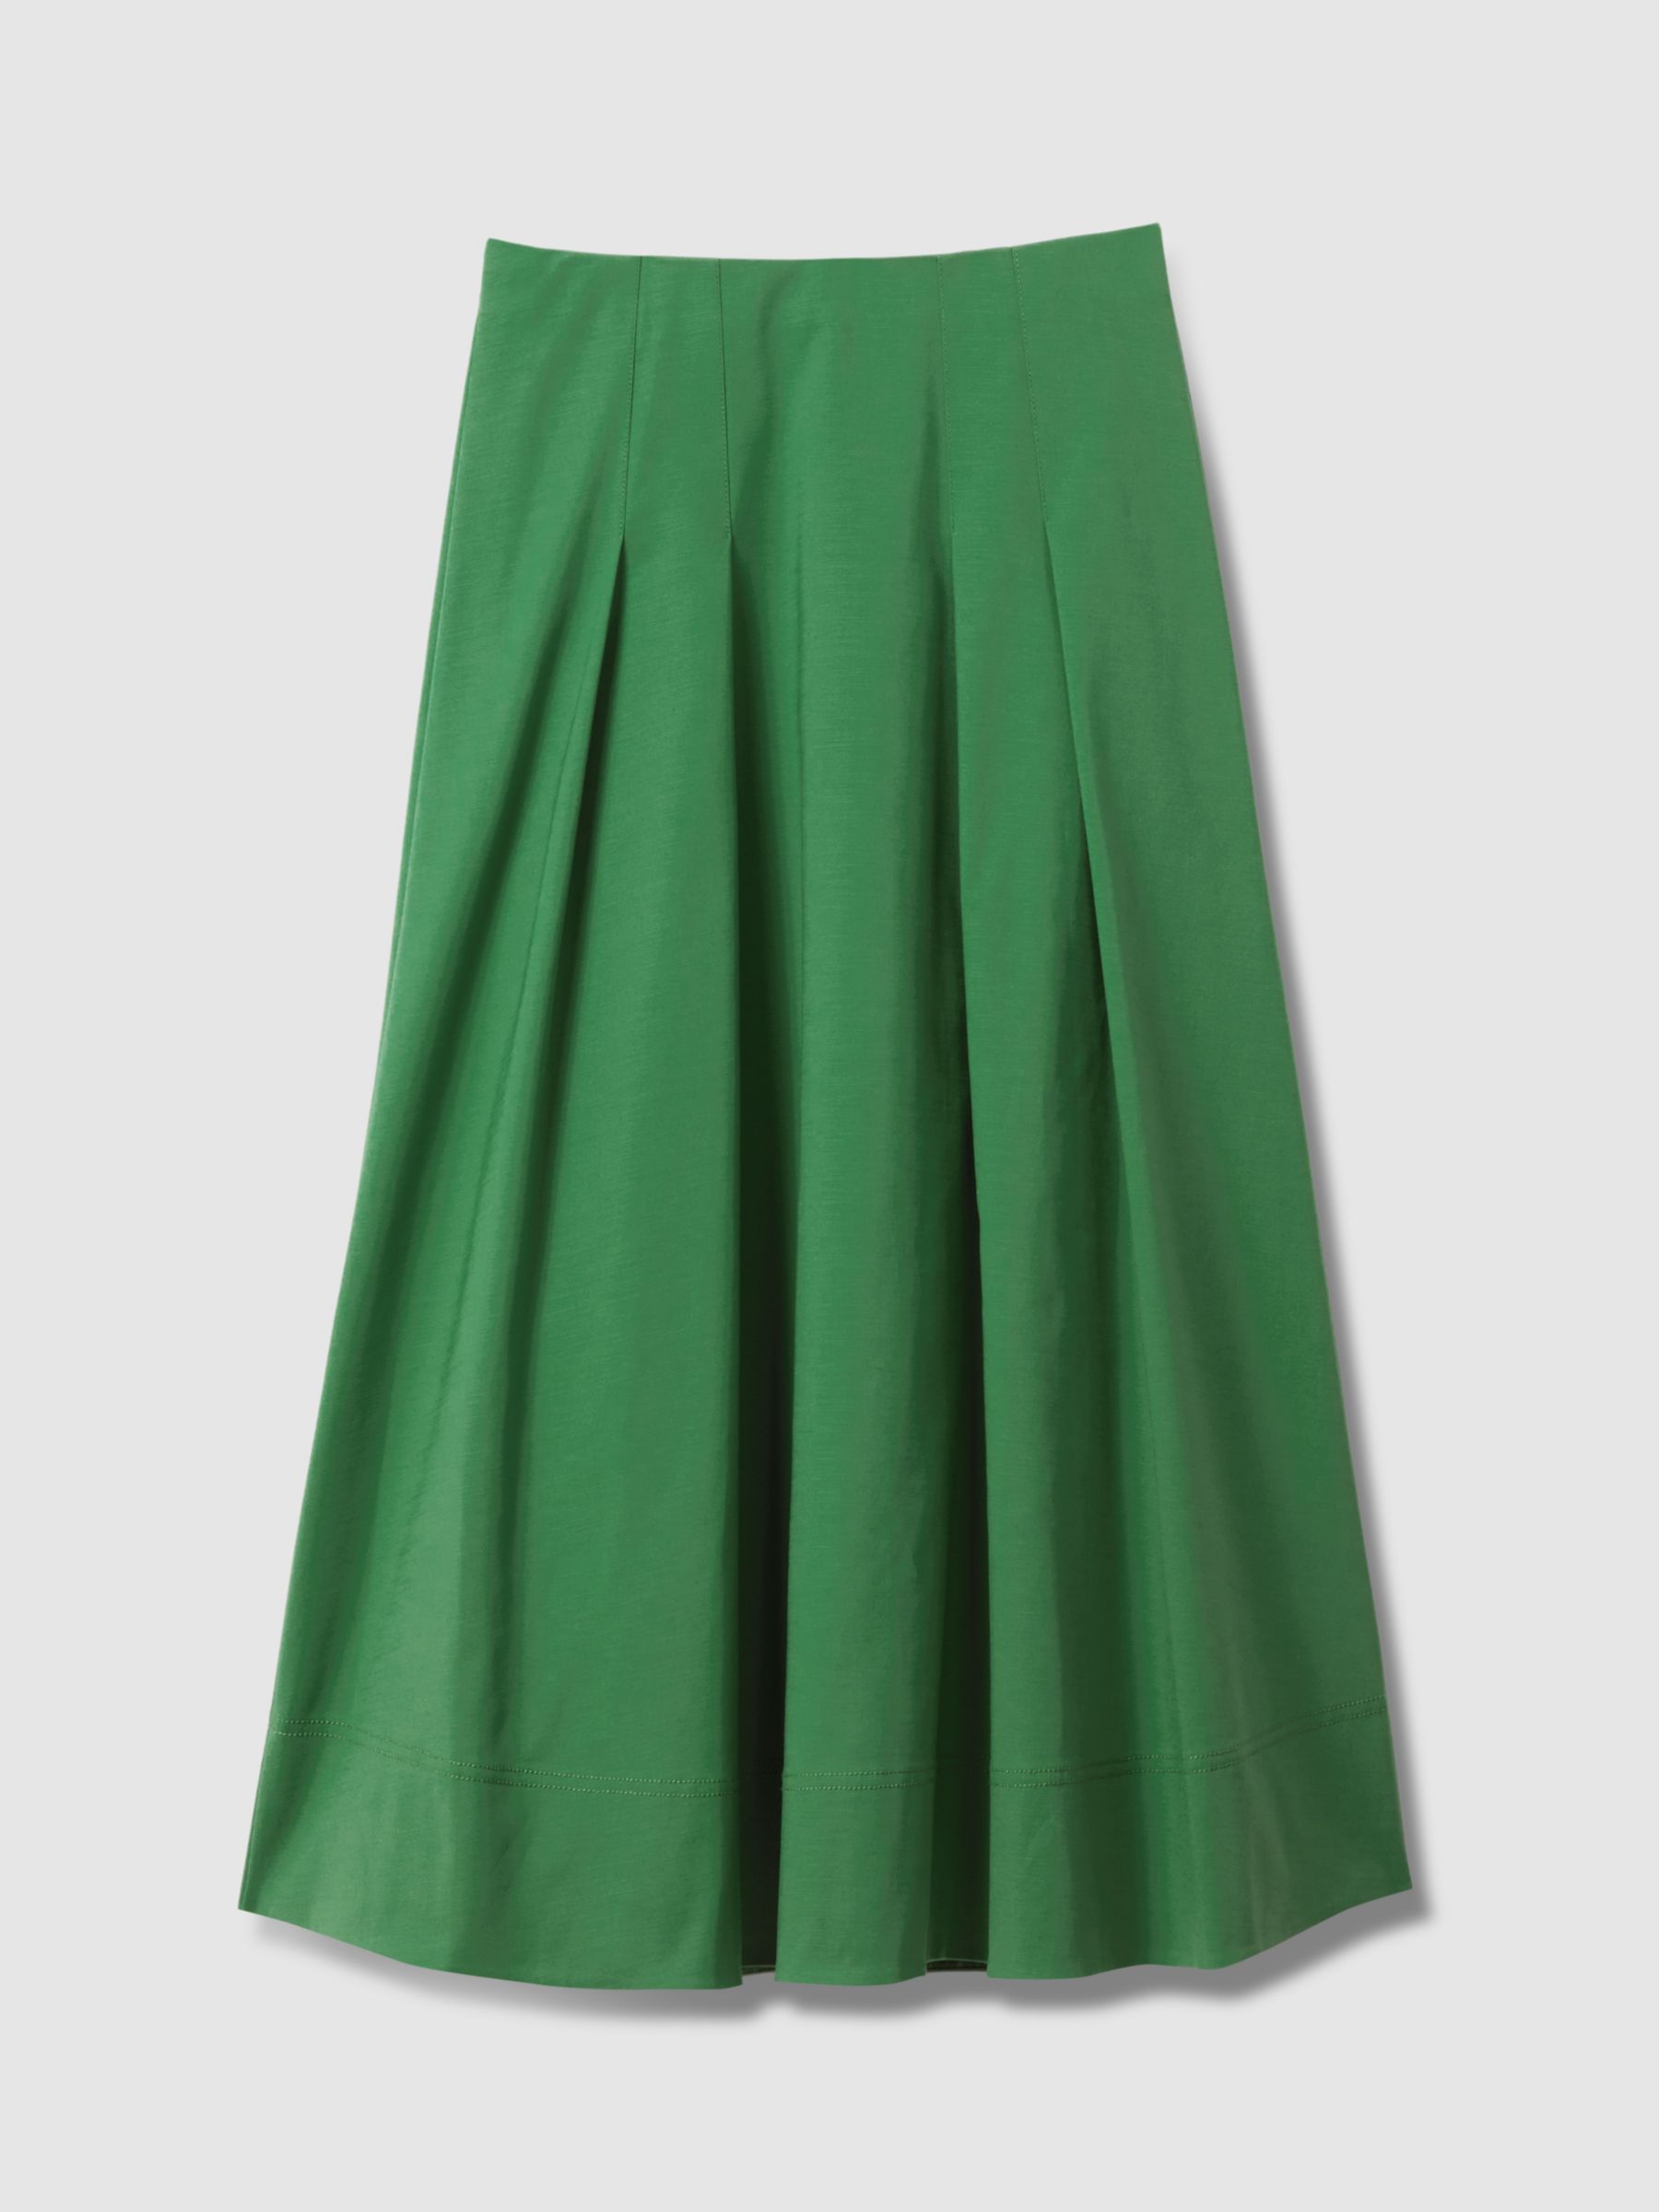 FLORERE Pleat Detail Full Midi Skirt, Bright Green, 16